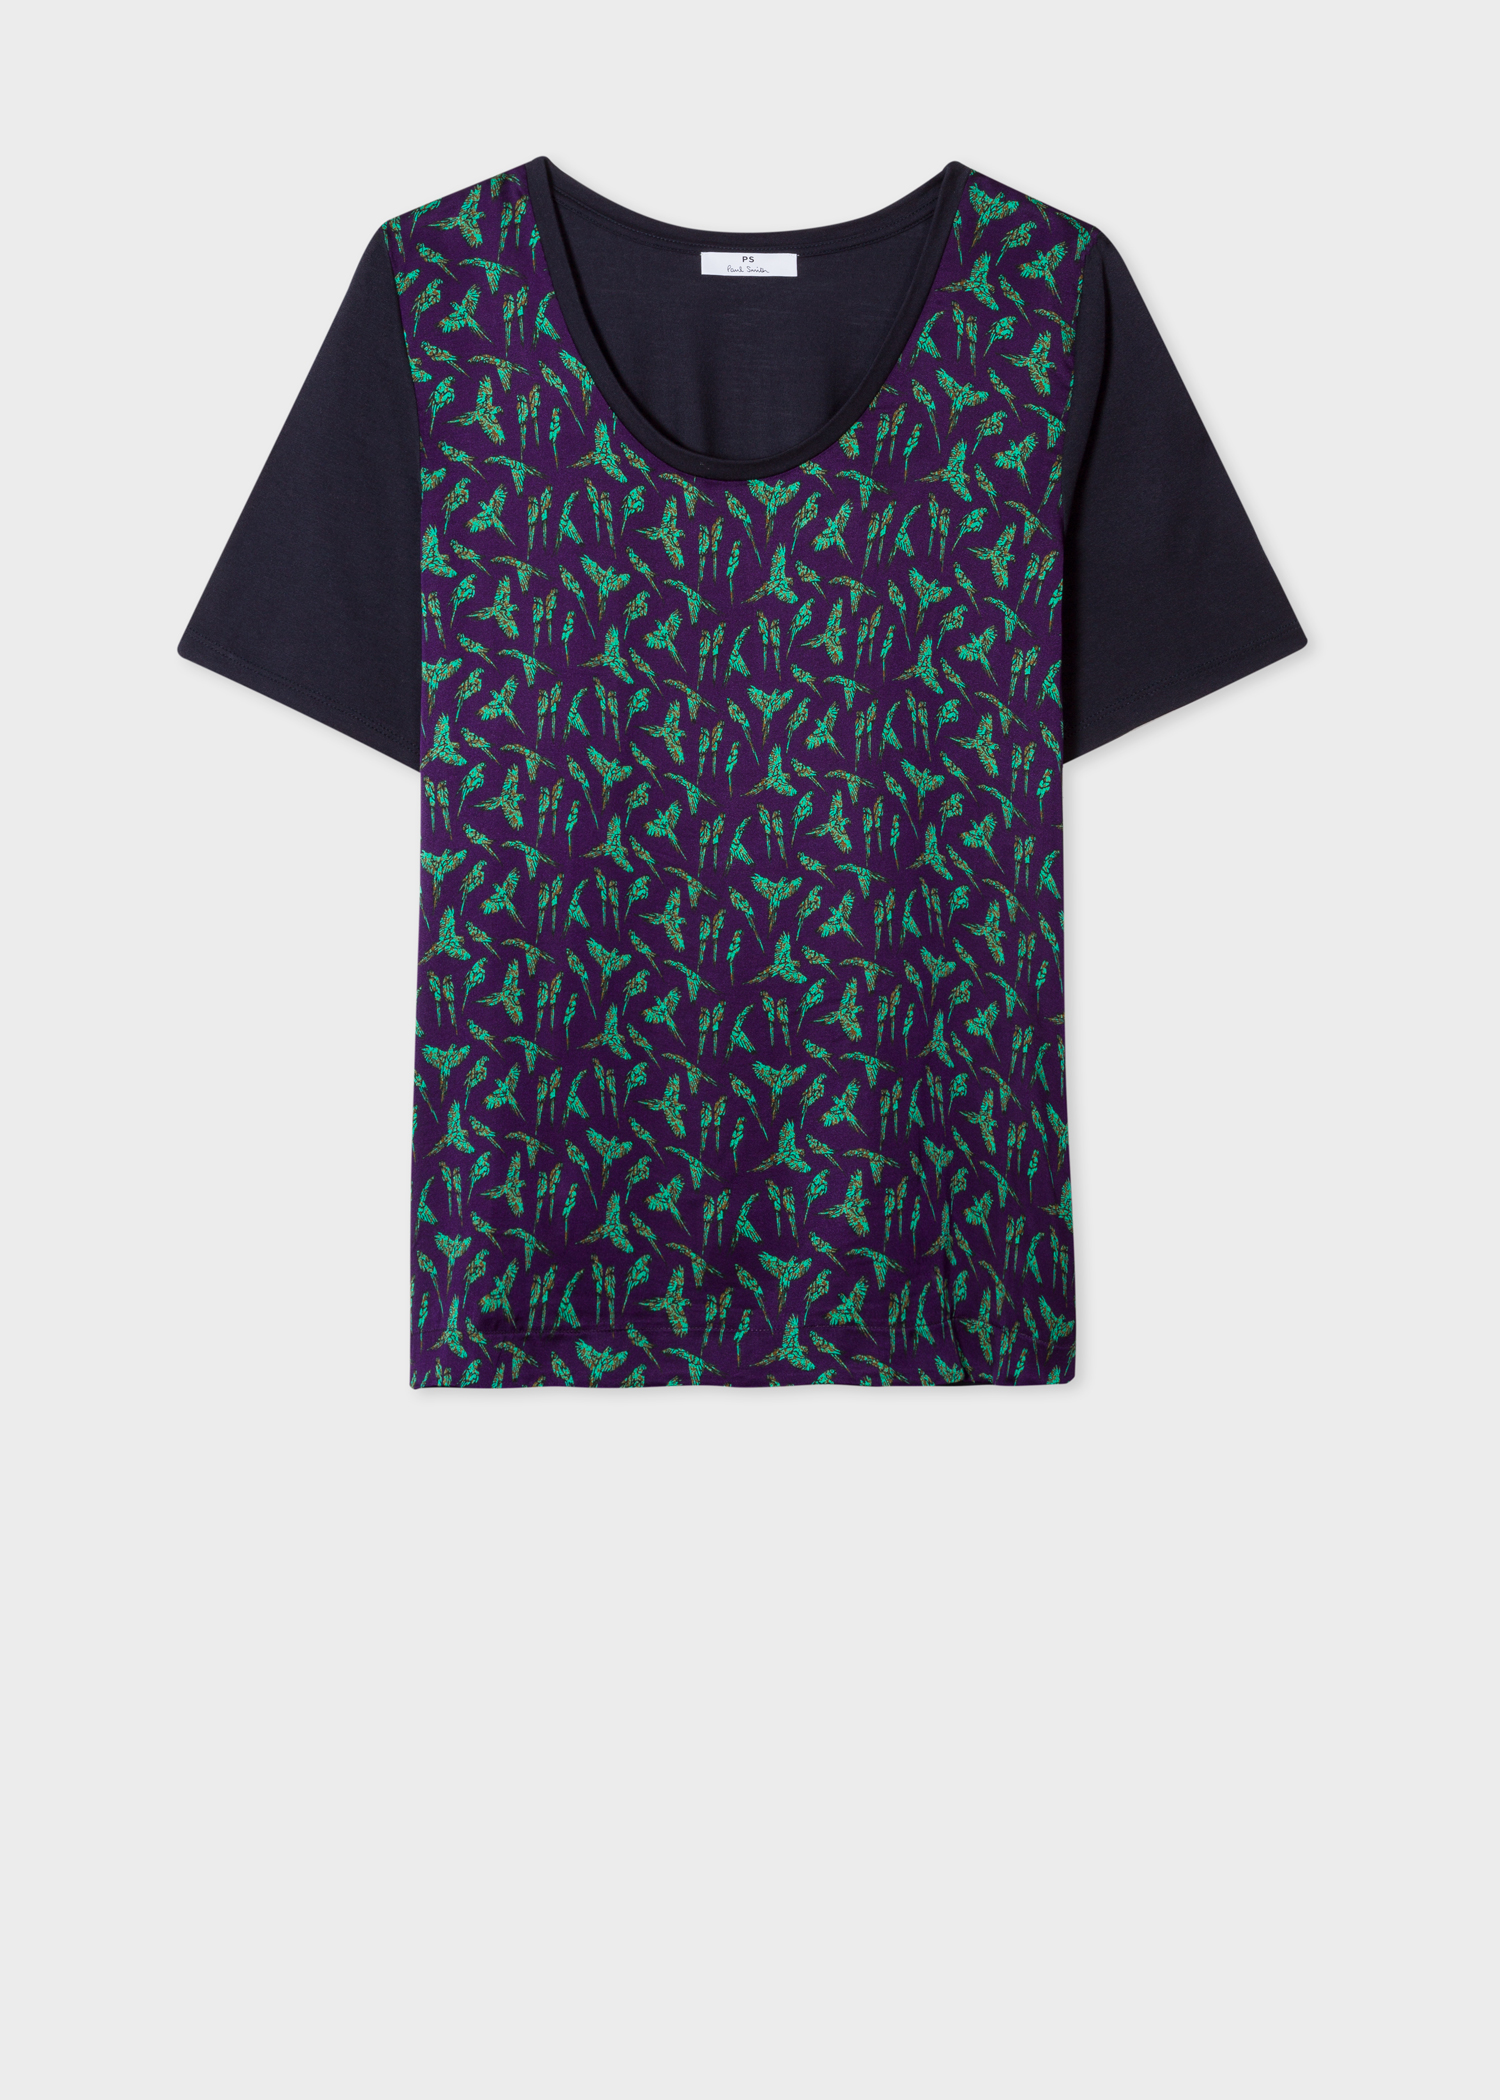 Front view - Women's Purple 'Parrot' Print Scoop Neck T-Shirt Paul Smith